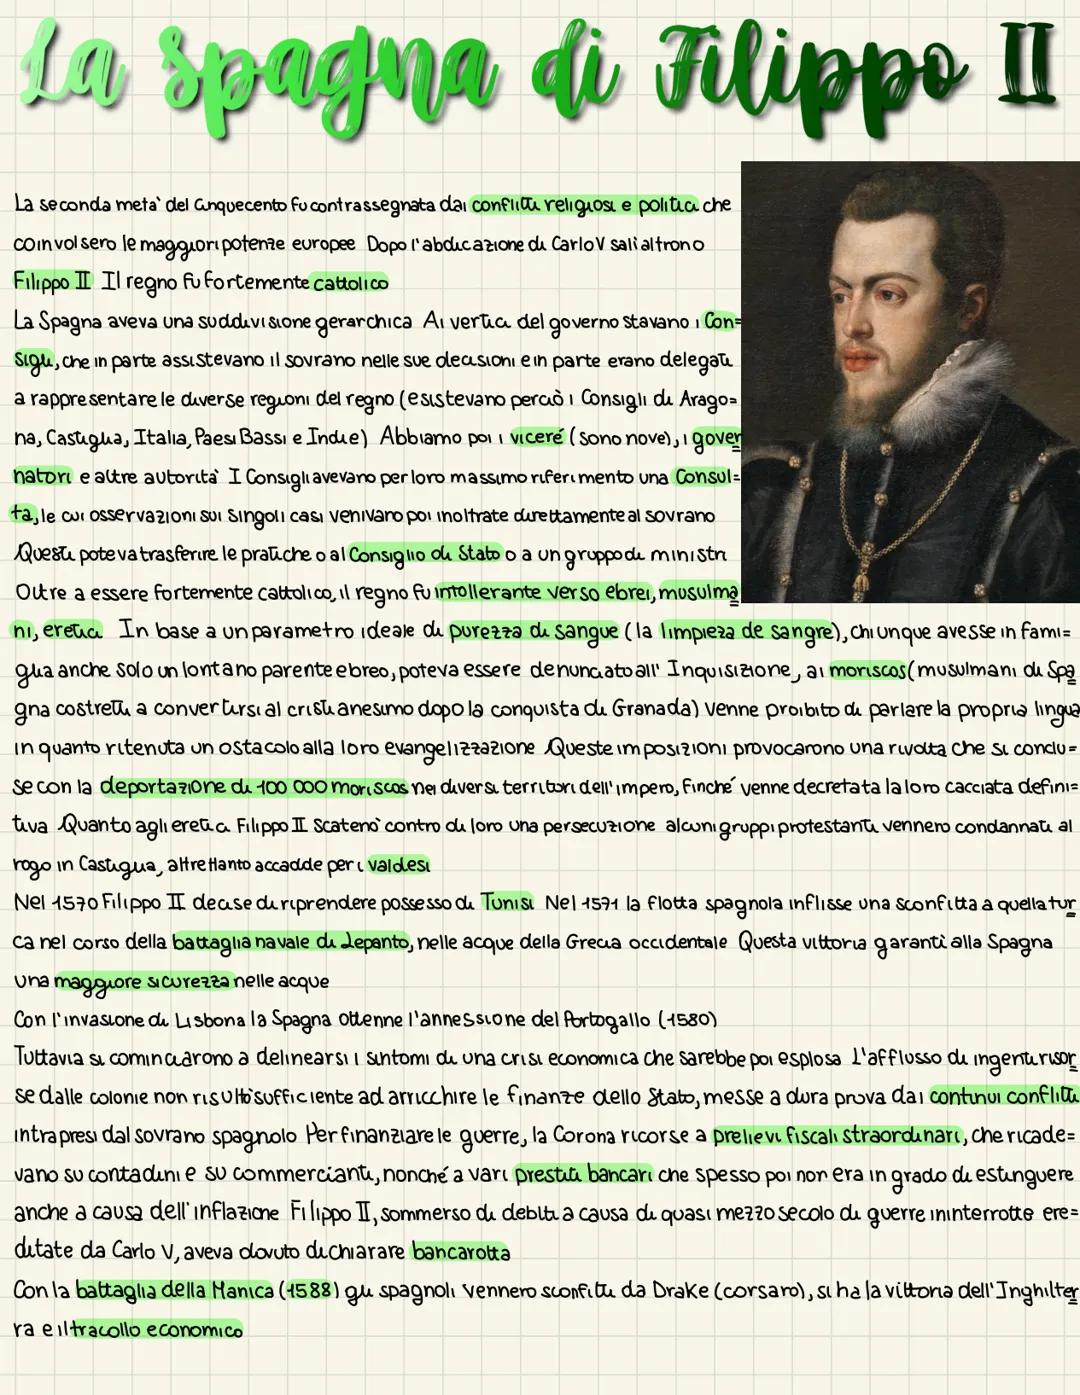 La Spagna di Filippo II
La seconda meta' del Gnquecento fu contrassegnata dai conflitu religiosi e politia che
coinvolsero le maggiori poten